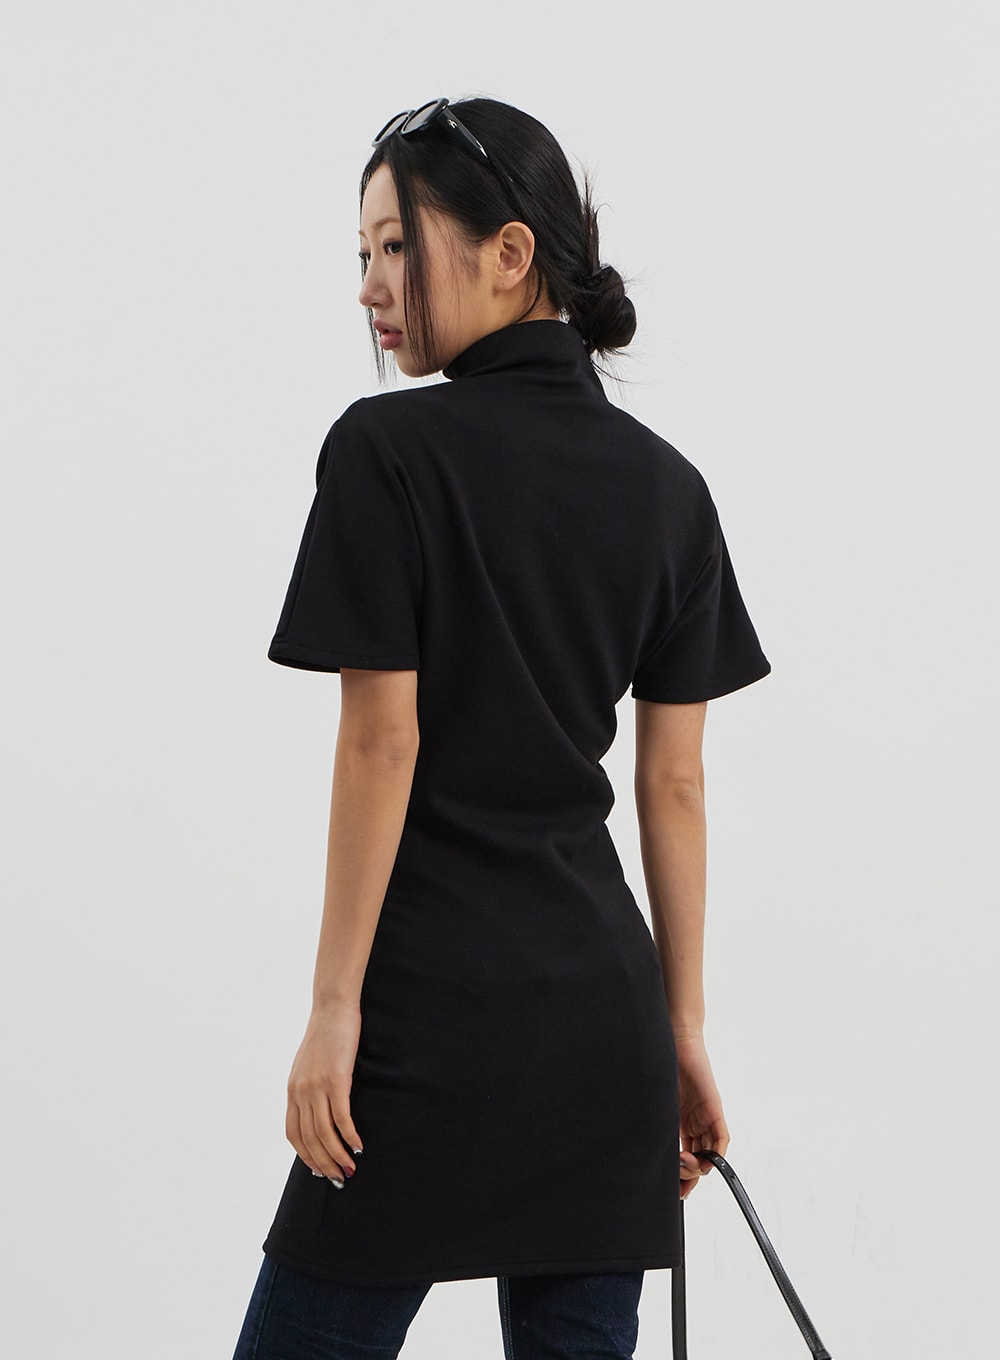 Turtleneck Short Sleeve Mini Dress CJ330 - Korean Women's Fashion 